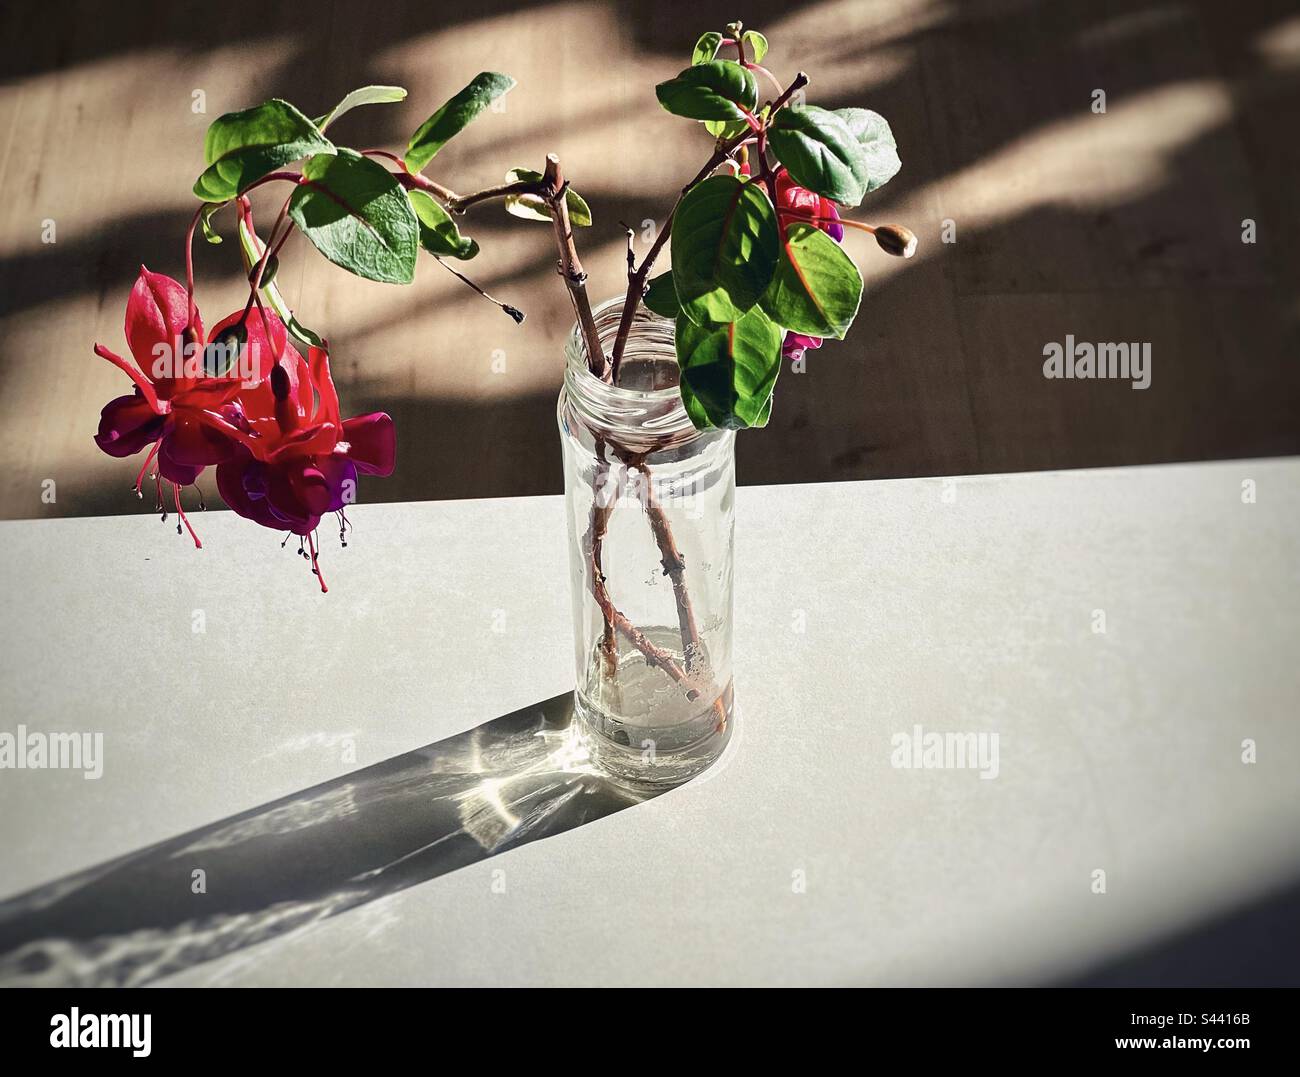 Vue en grand angle des tiges de fleurs de fuchsia fleuries en bouteille de verre sur une table blanche contre un plancher en bois. Lumière du soleil et ombre. Banque D'Images